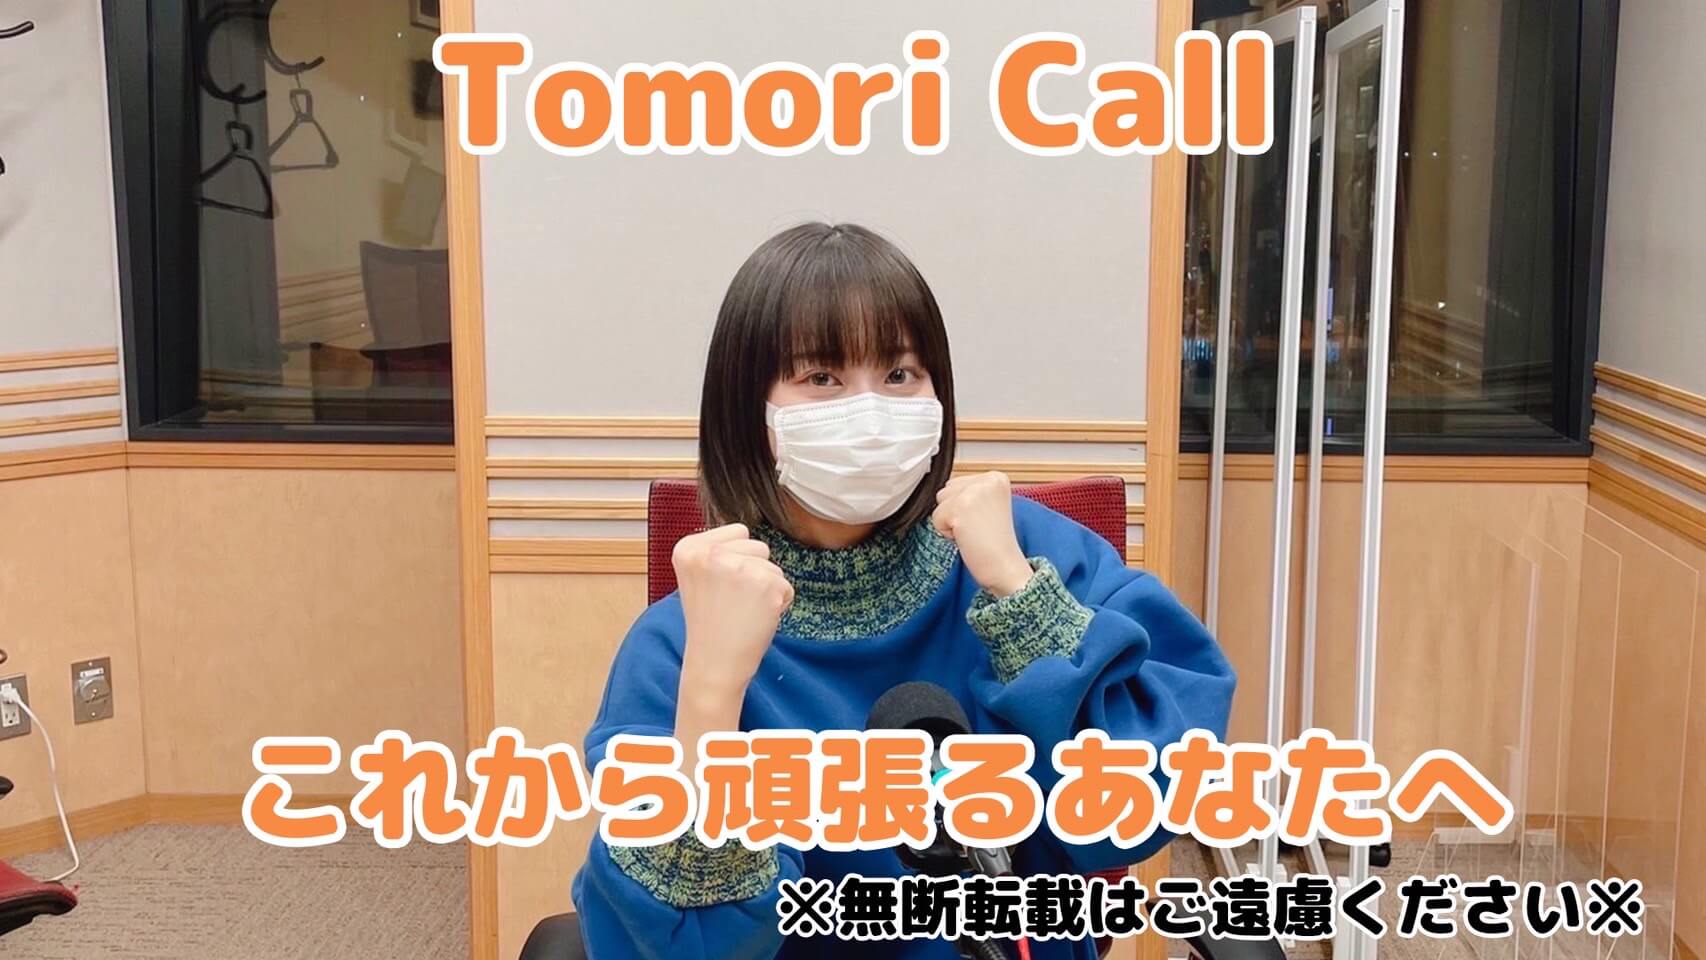 Tomori Call これから頑張るあなたへ